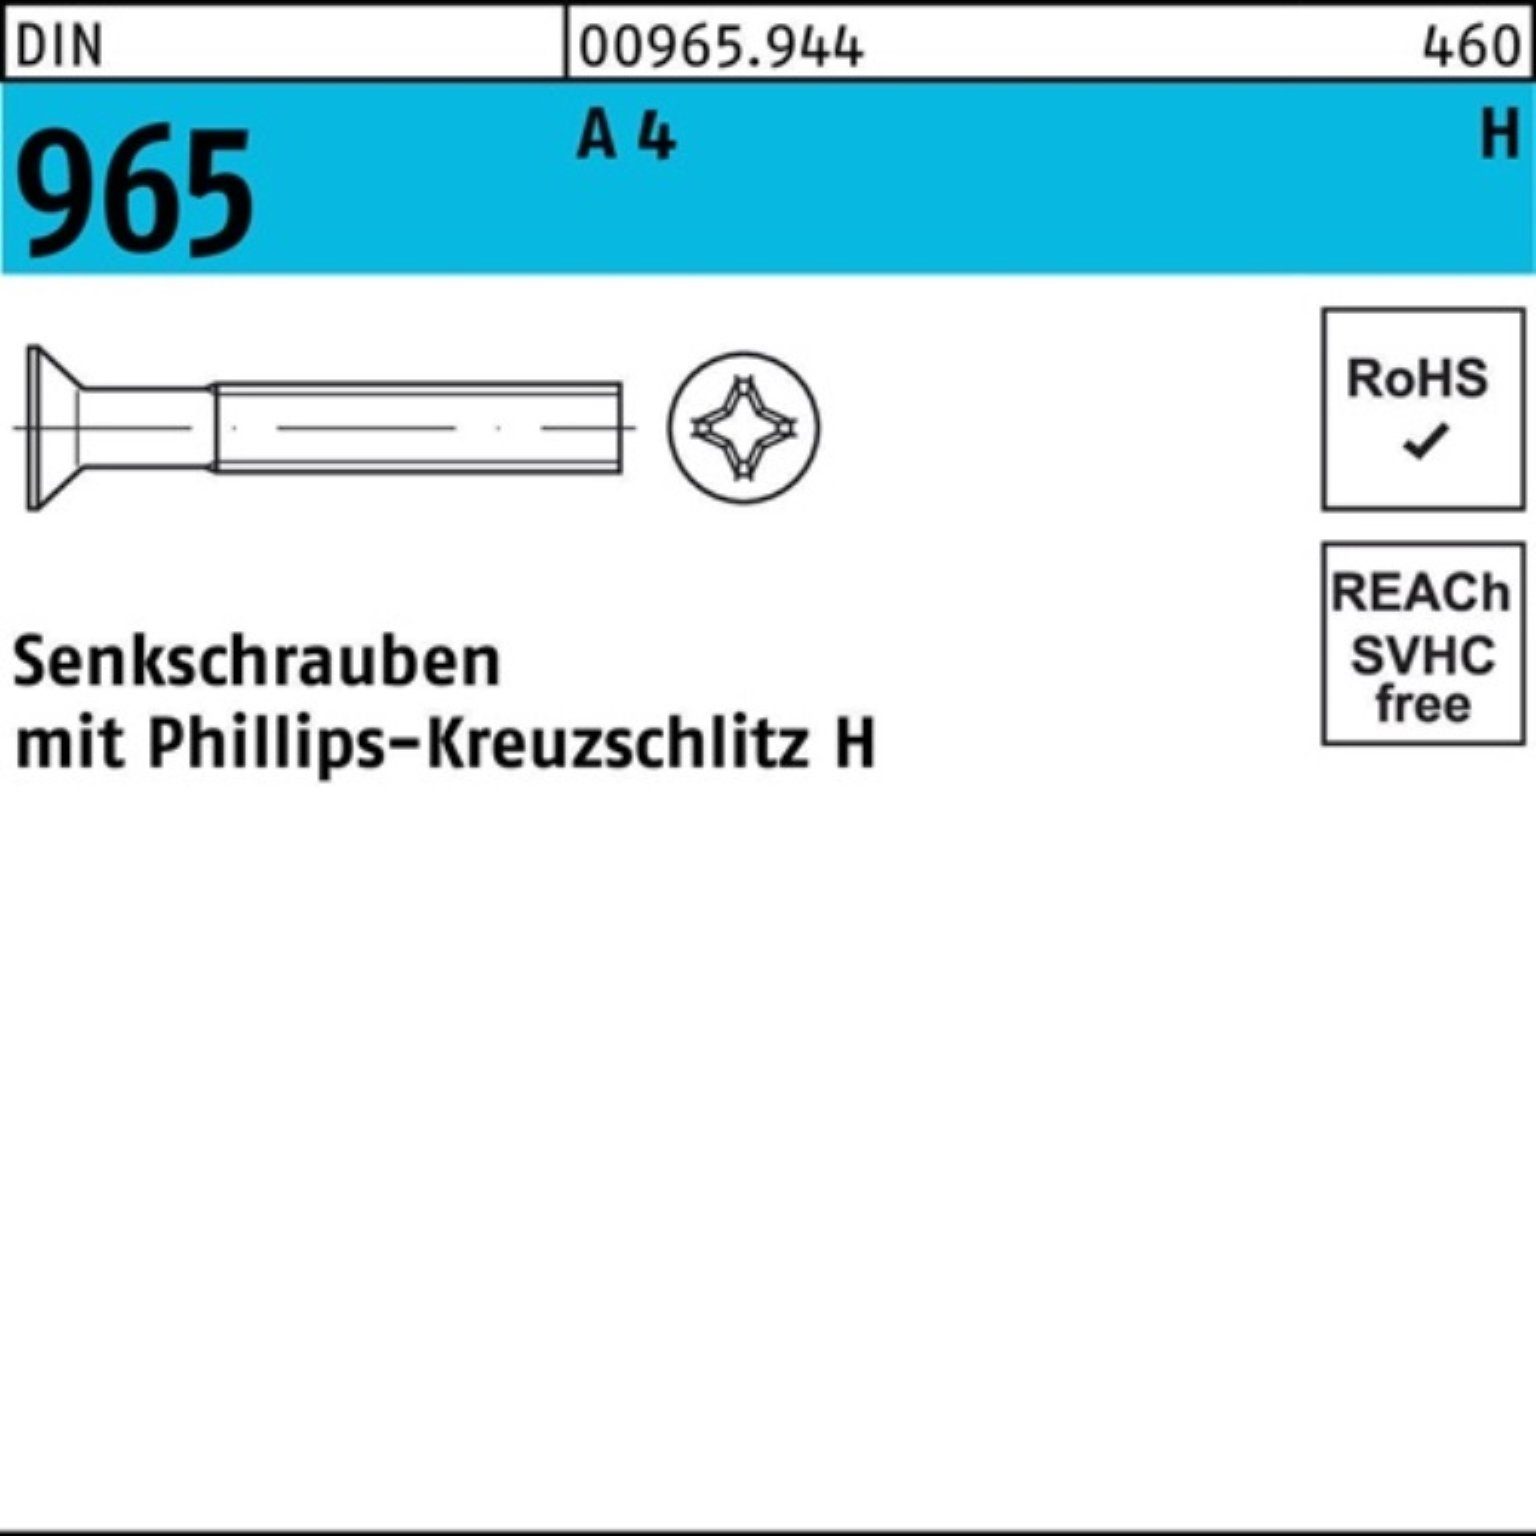 A DIN Pack DIN Senkschraube Stück 1000 14-H PH 965 1000er Senkschraube Reyher M2,5x 965 4